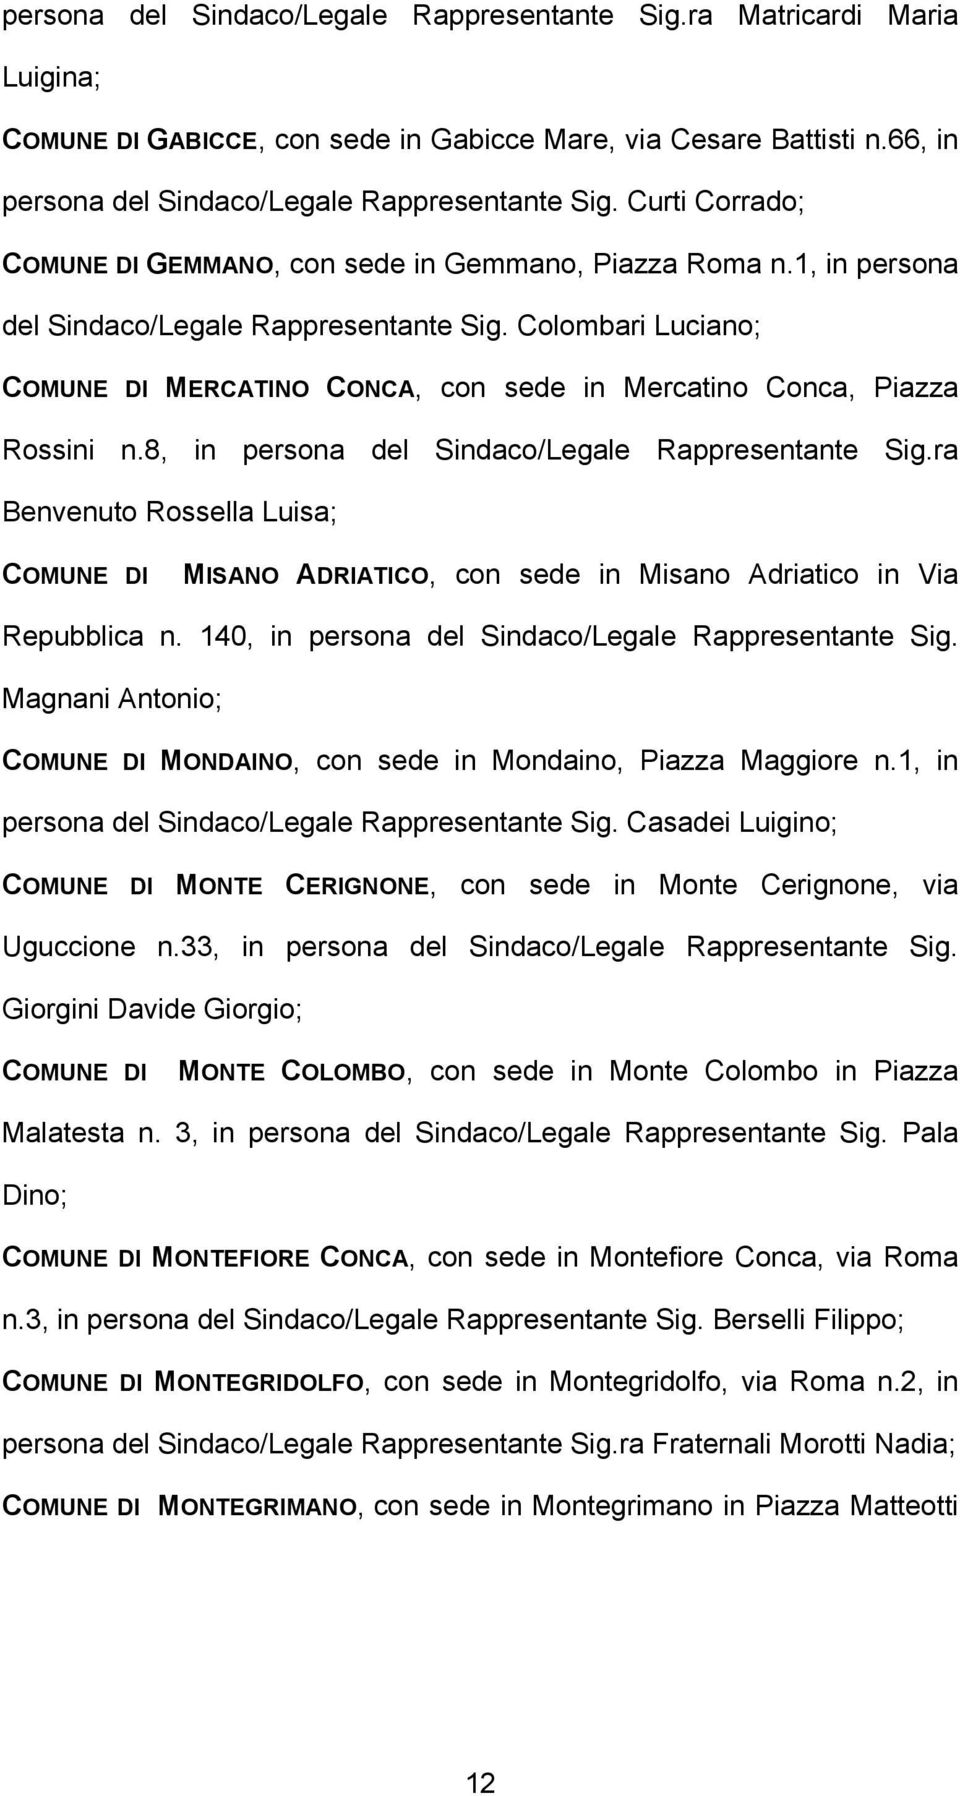 Colombari Luciano; COMUNE DI MERCATINO CONCA, con sede in Mercatino Conca, Piazza Rossini n.8, in persona del Sindaco/Legale Rappresentante Sig.